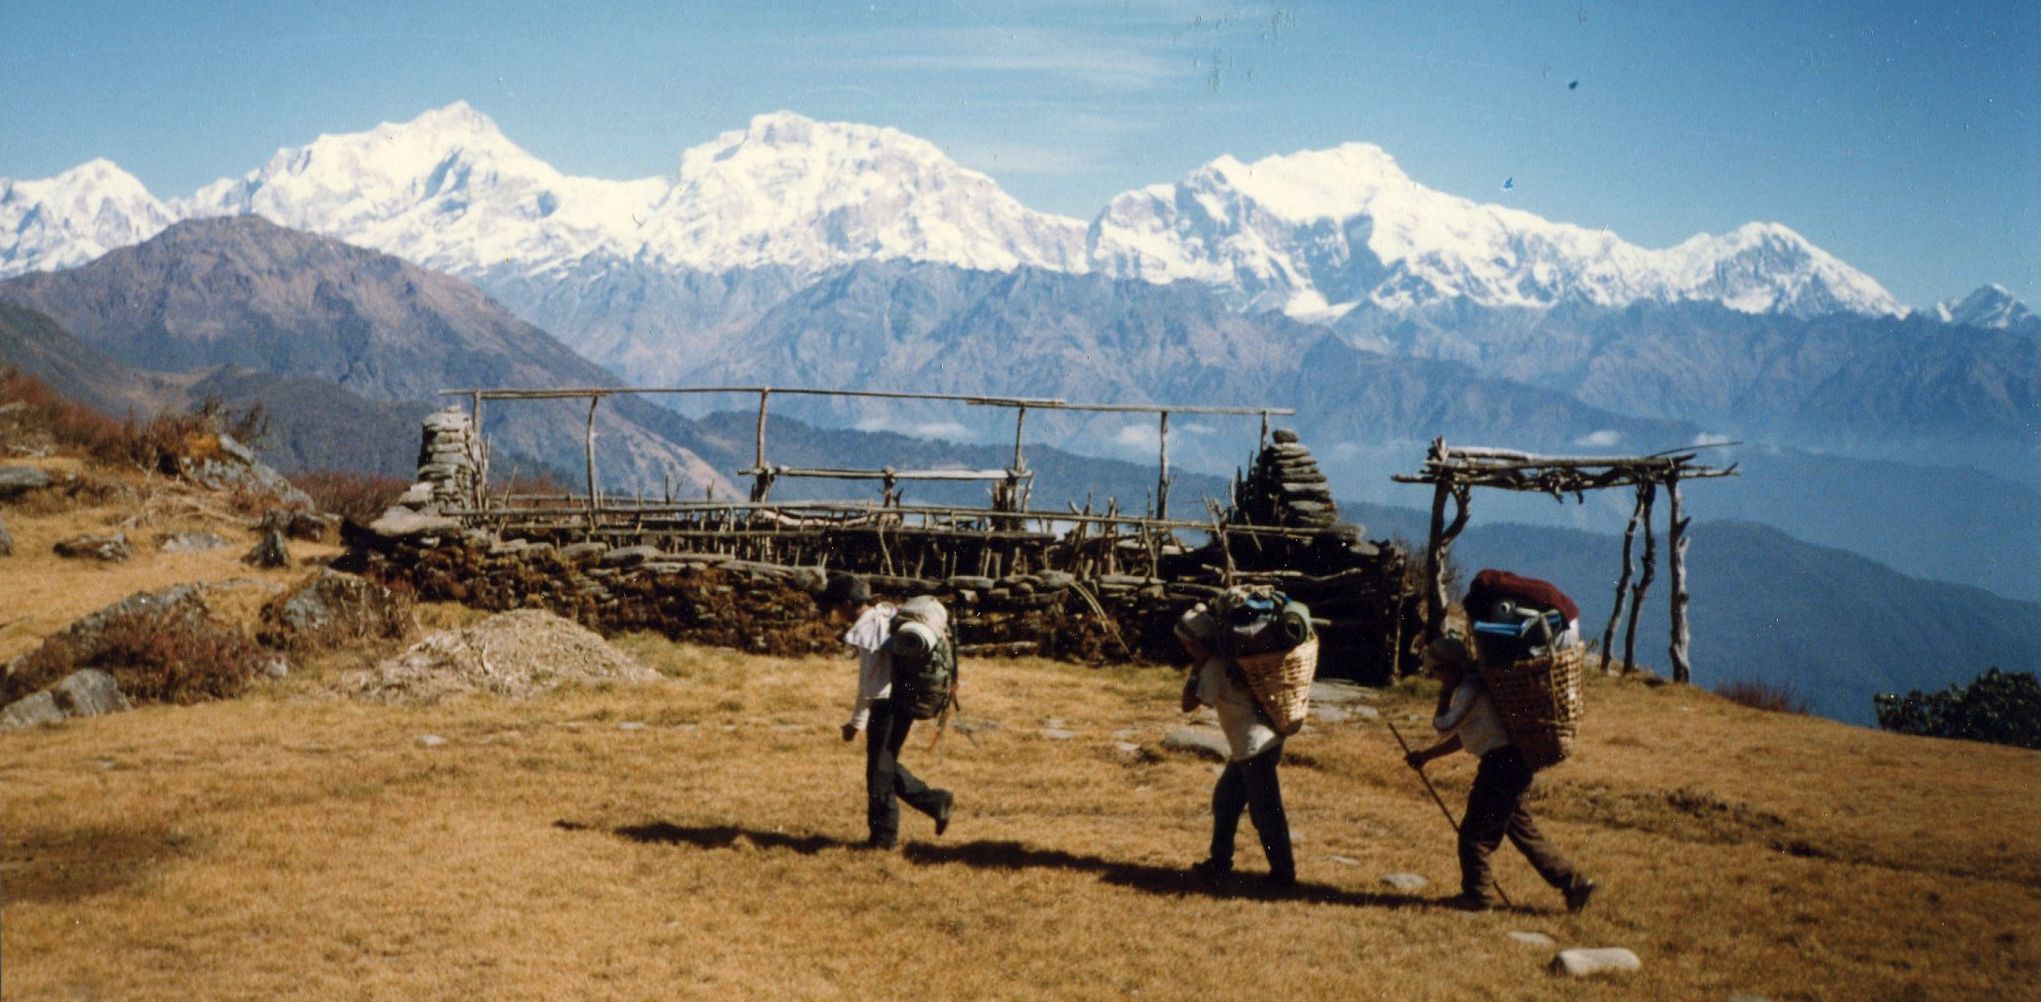 The Manaslu Himal from Talbrung Danda